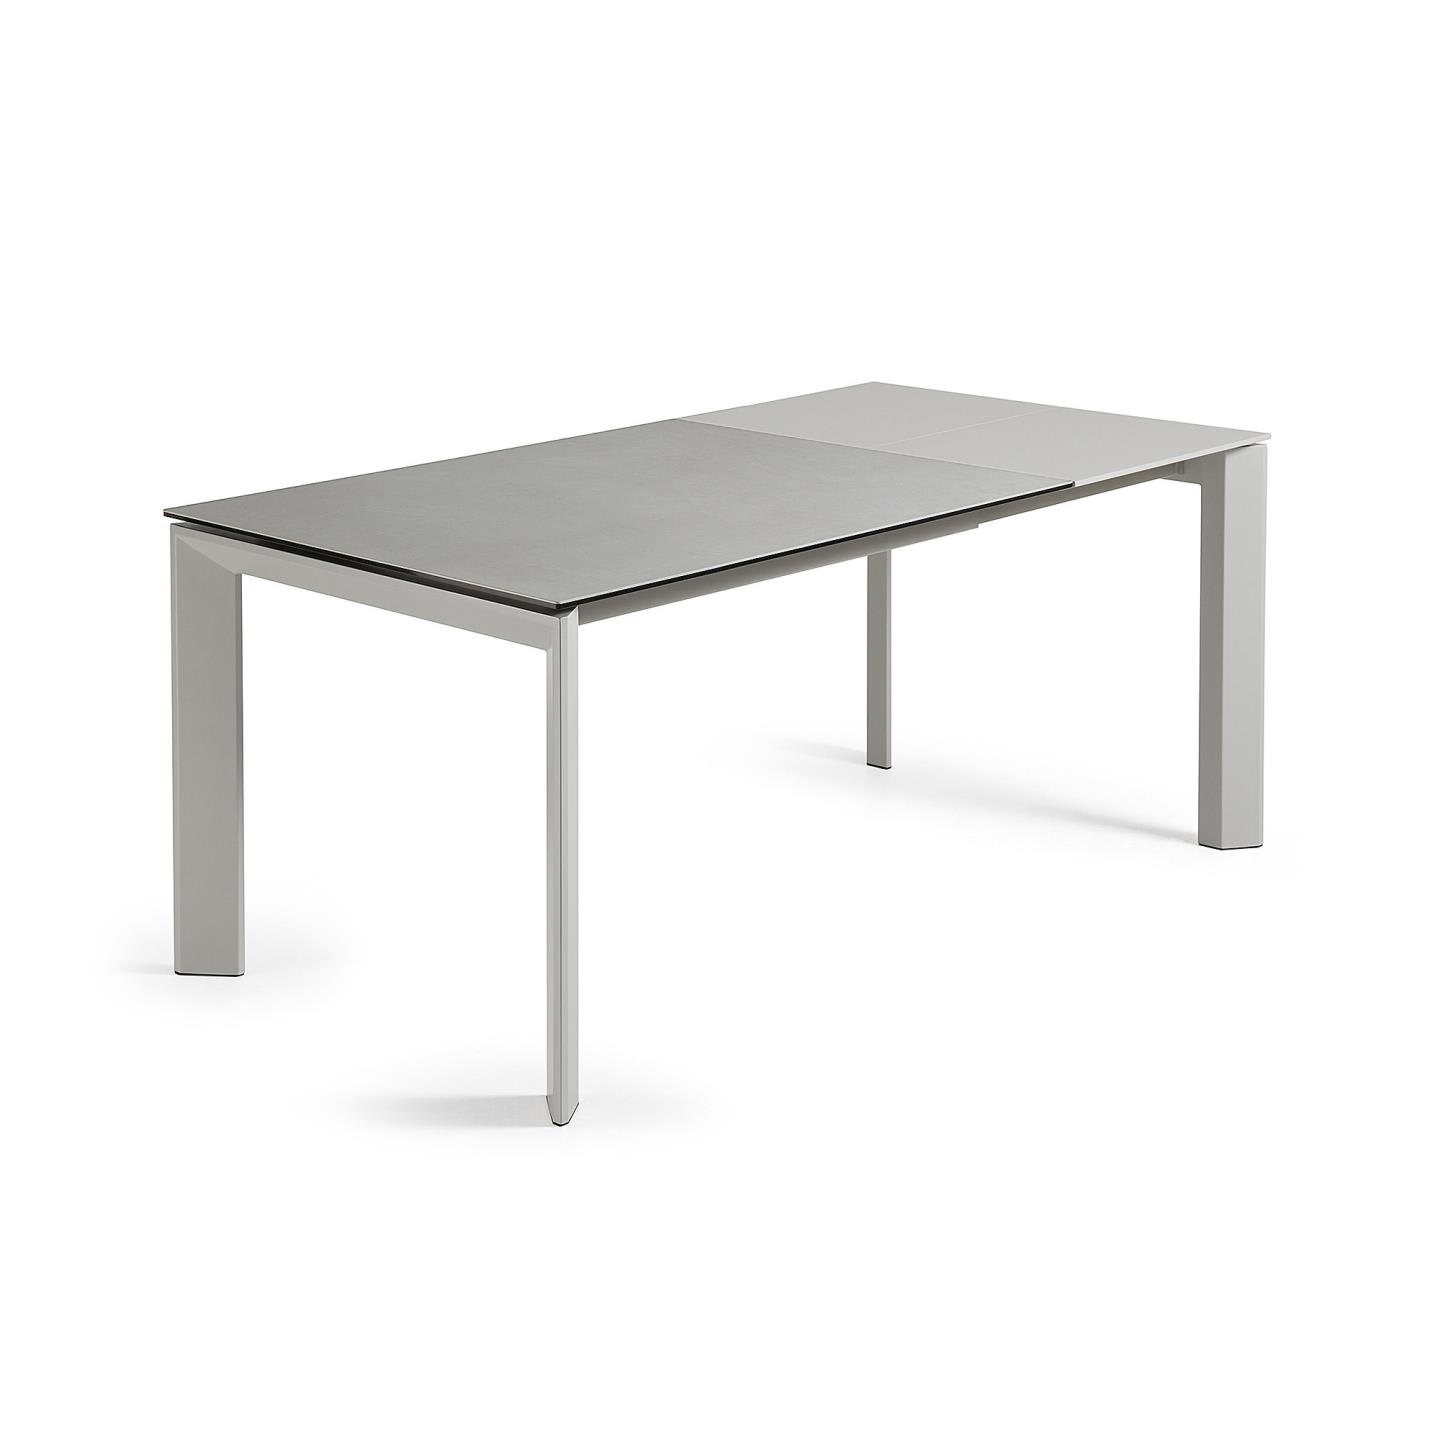 Axis kihúzható kerámia asztal Hydra Plomo befejezéssel és szürke acéllábakkal 120 (180) cm